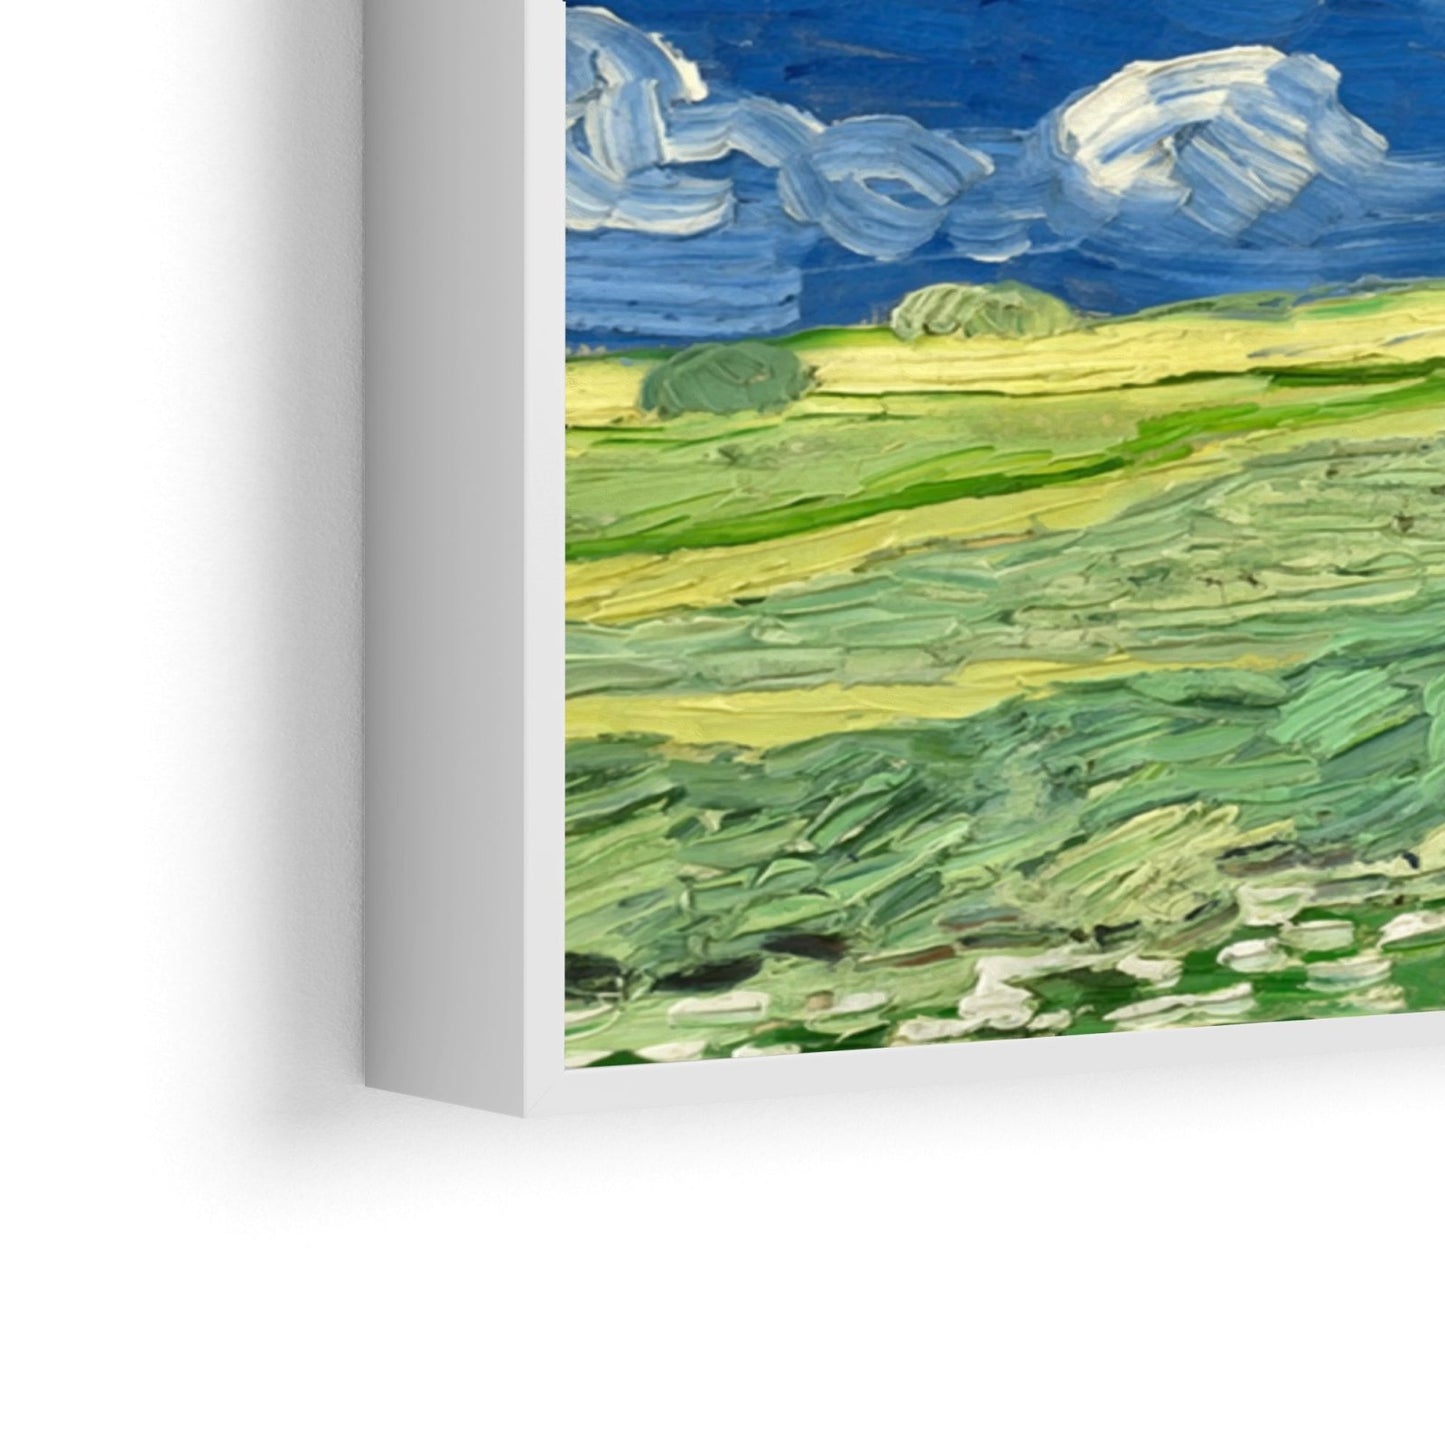 Câmpuri de grâu sub nori de tunere, Vincent Van Gogh